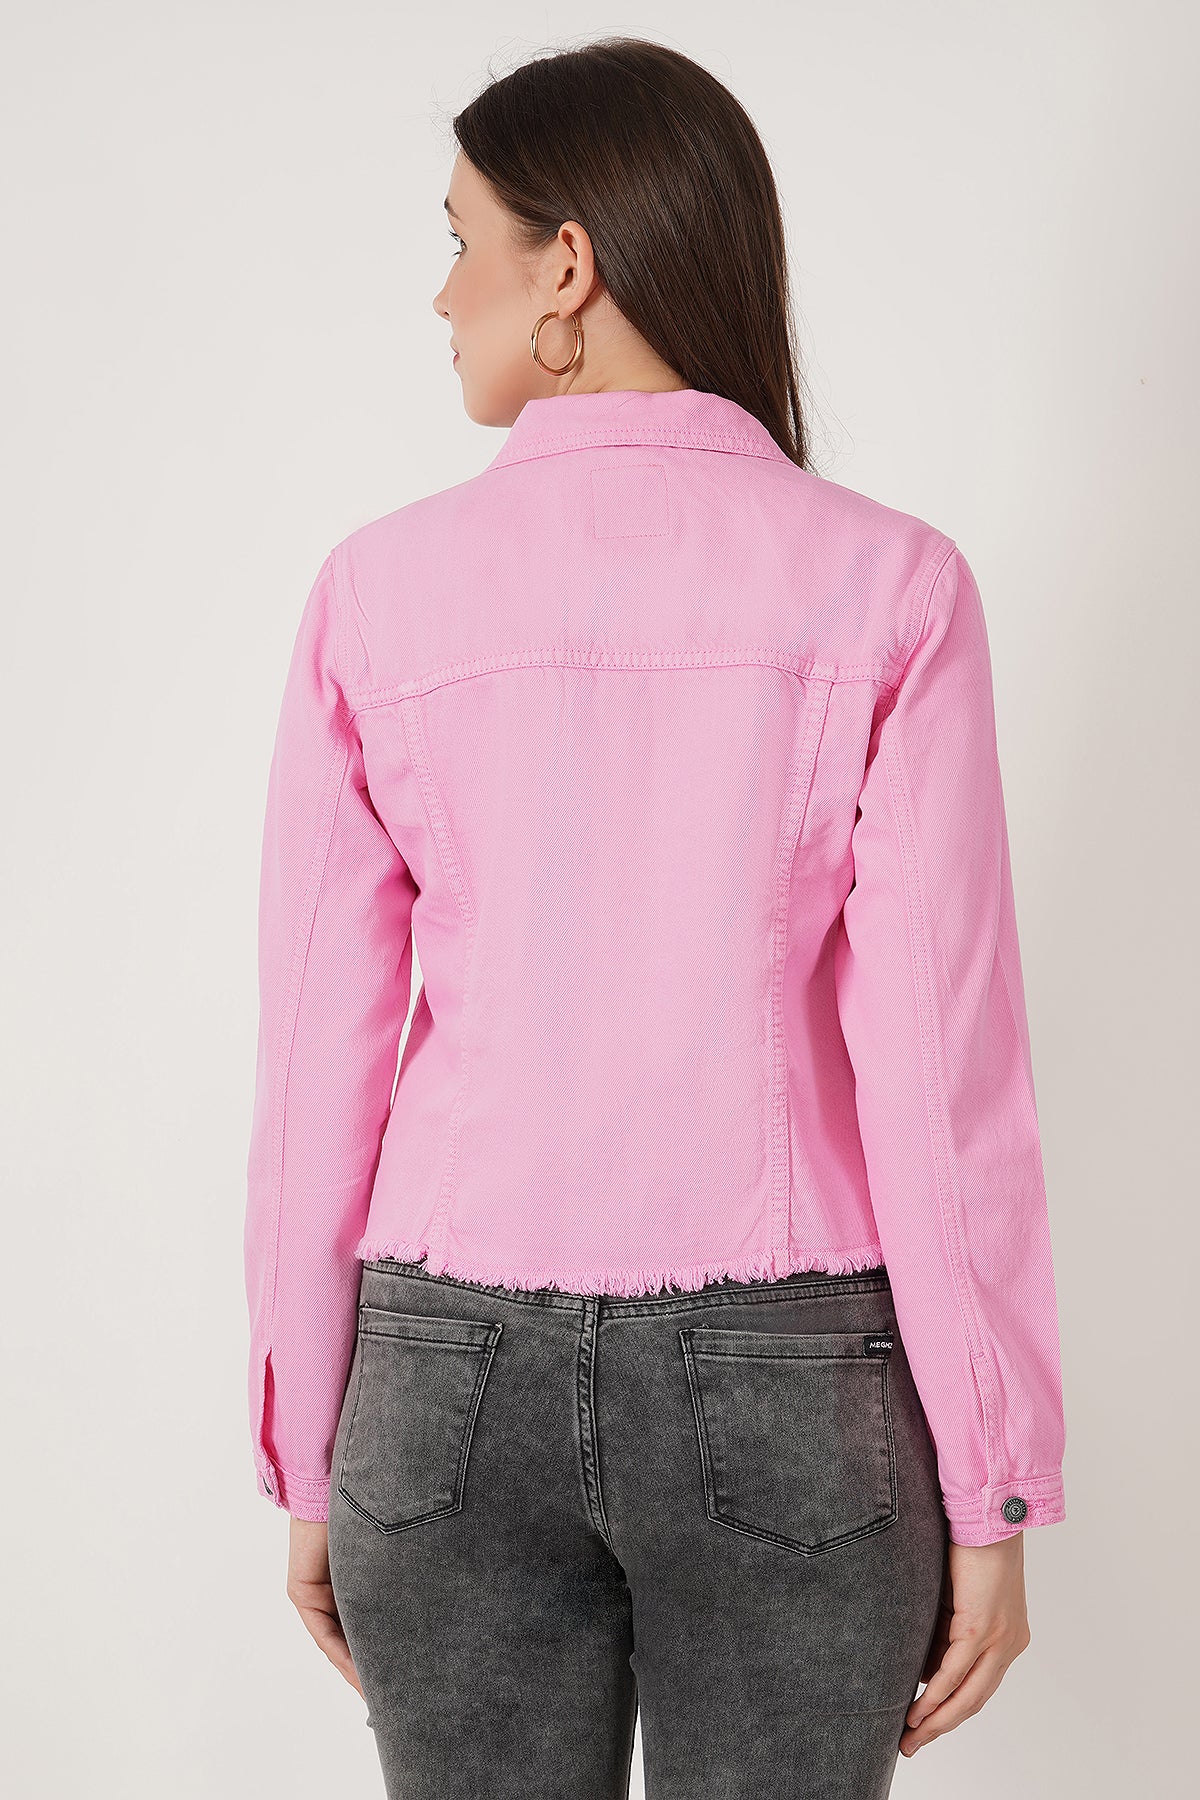 Plus Size - Trucker Jacket - Denim Pink Wash - Torrid